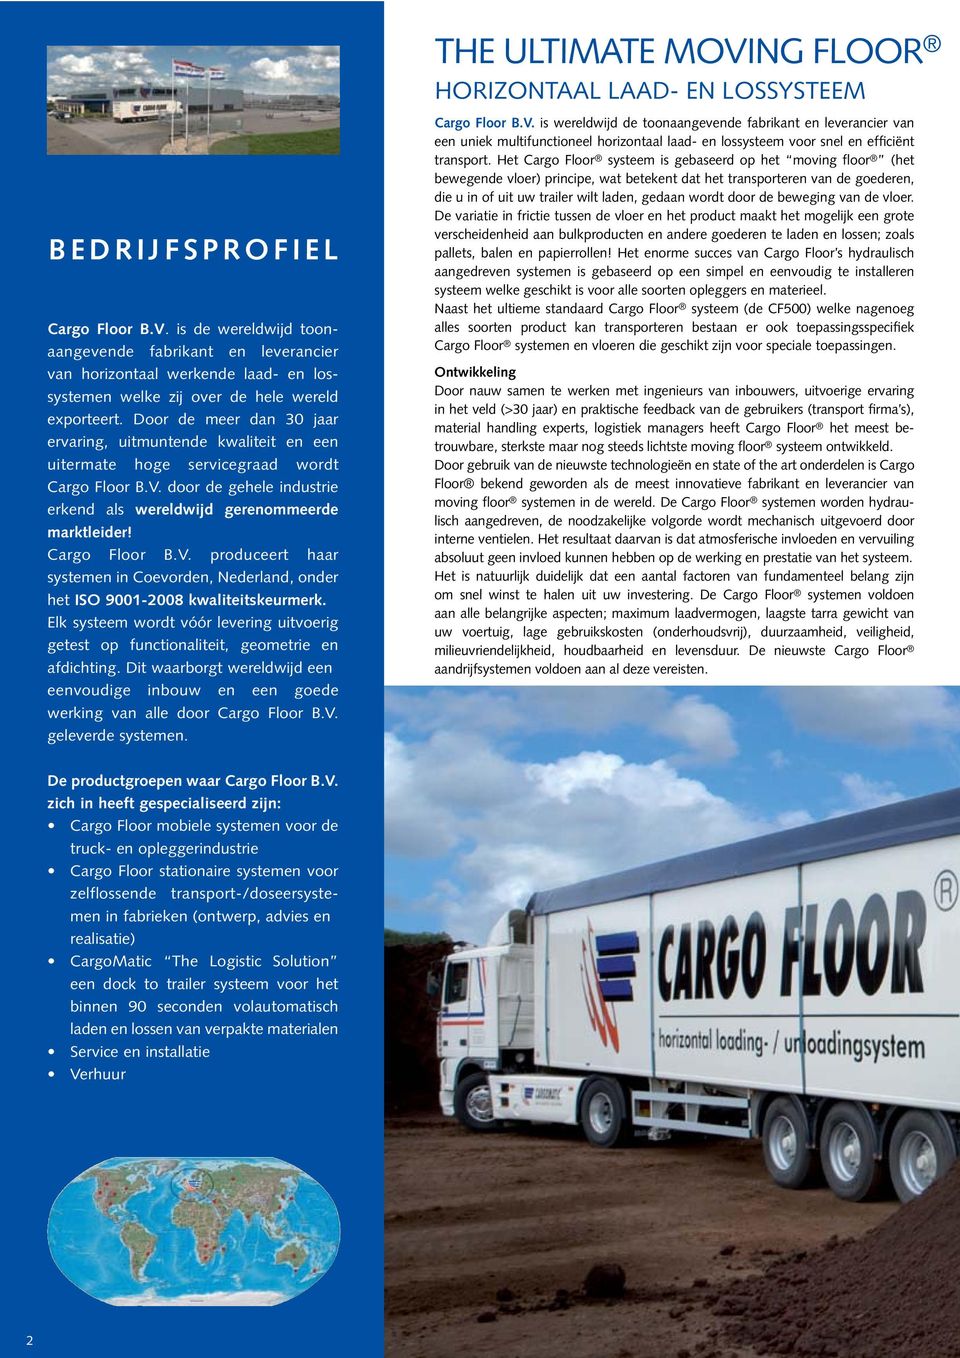 Cargo Floor B.V. produceert haar systemen in Coevorden, Nederland, onder het ISO 9001-2008 kwaliteitskeurmerk.